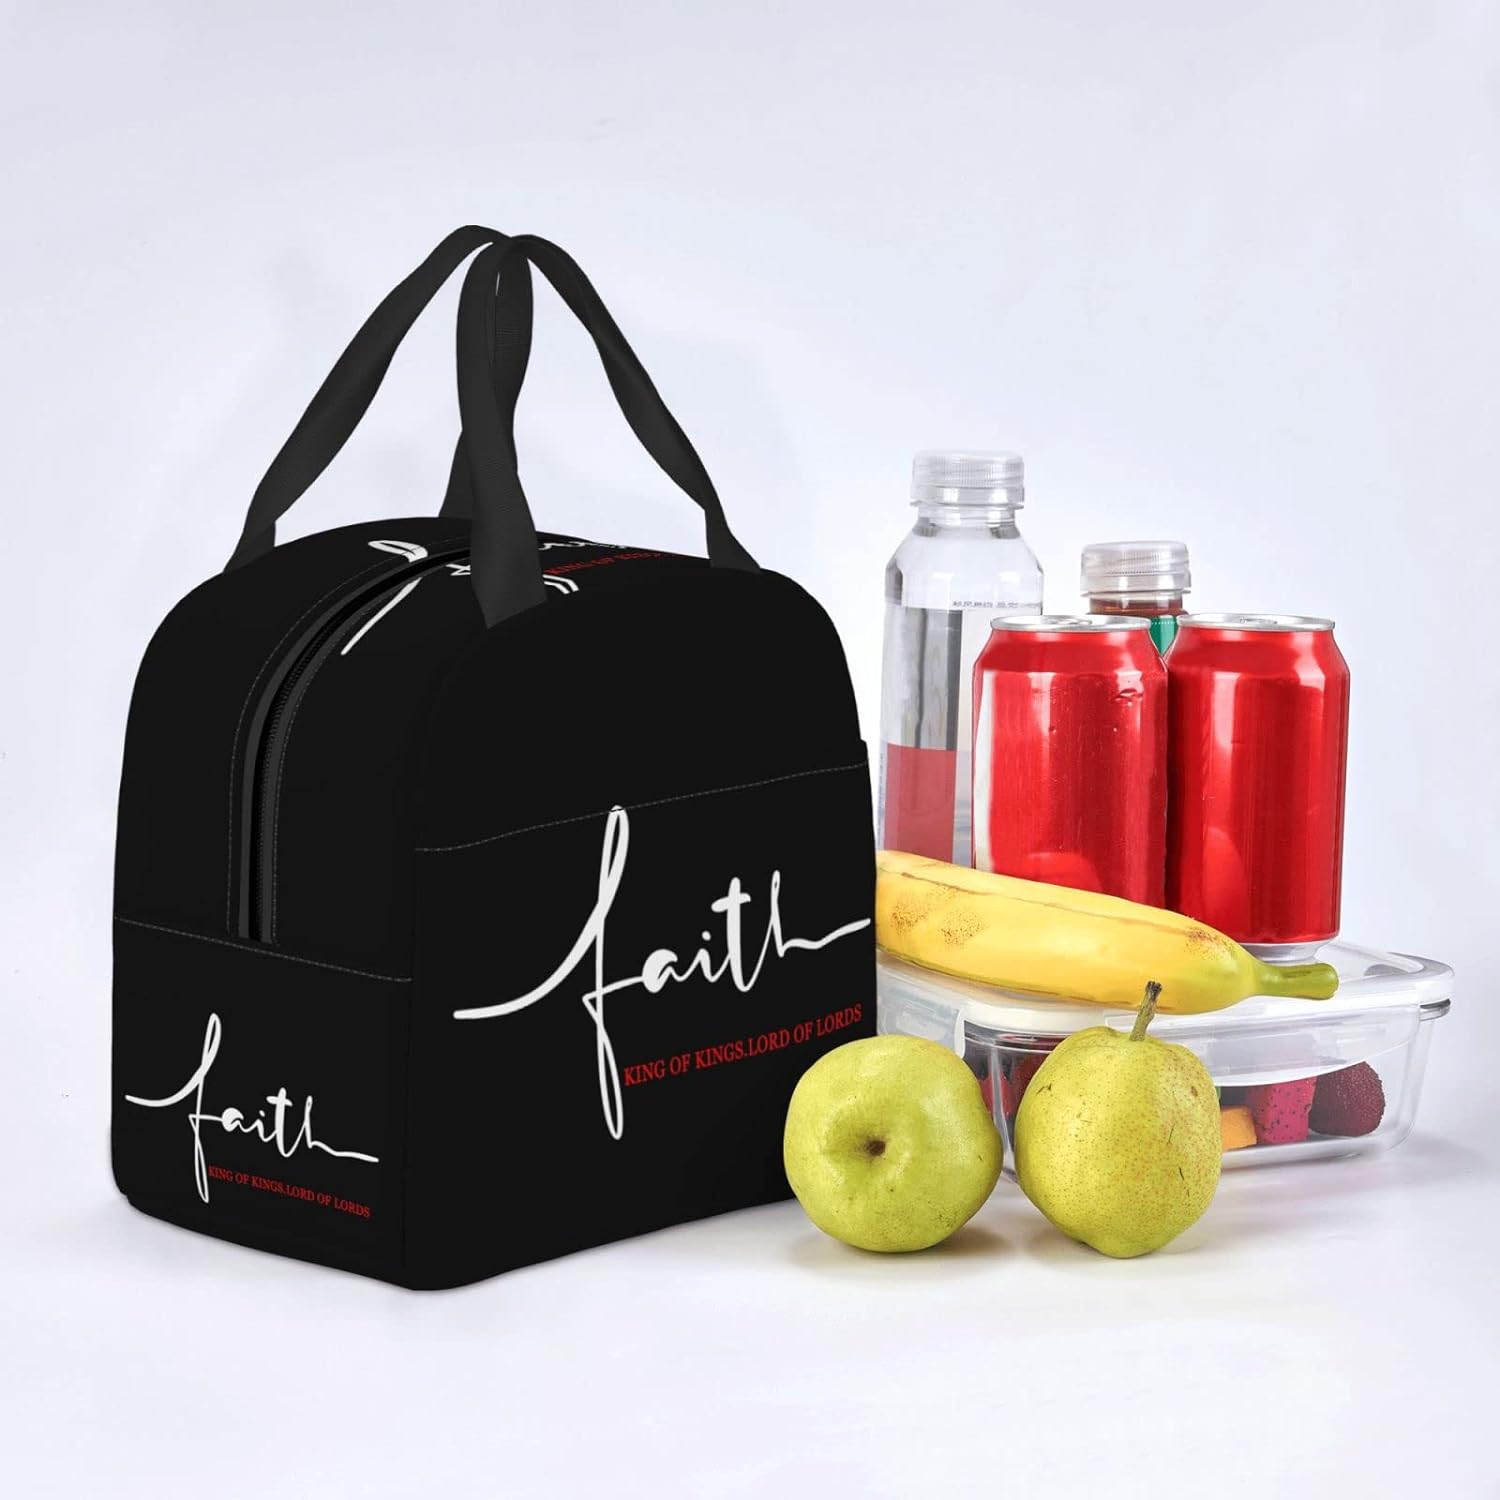 Faith Christian Lunch Bag claimedbygoddesigns